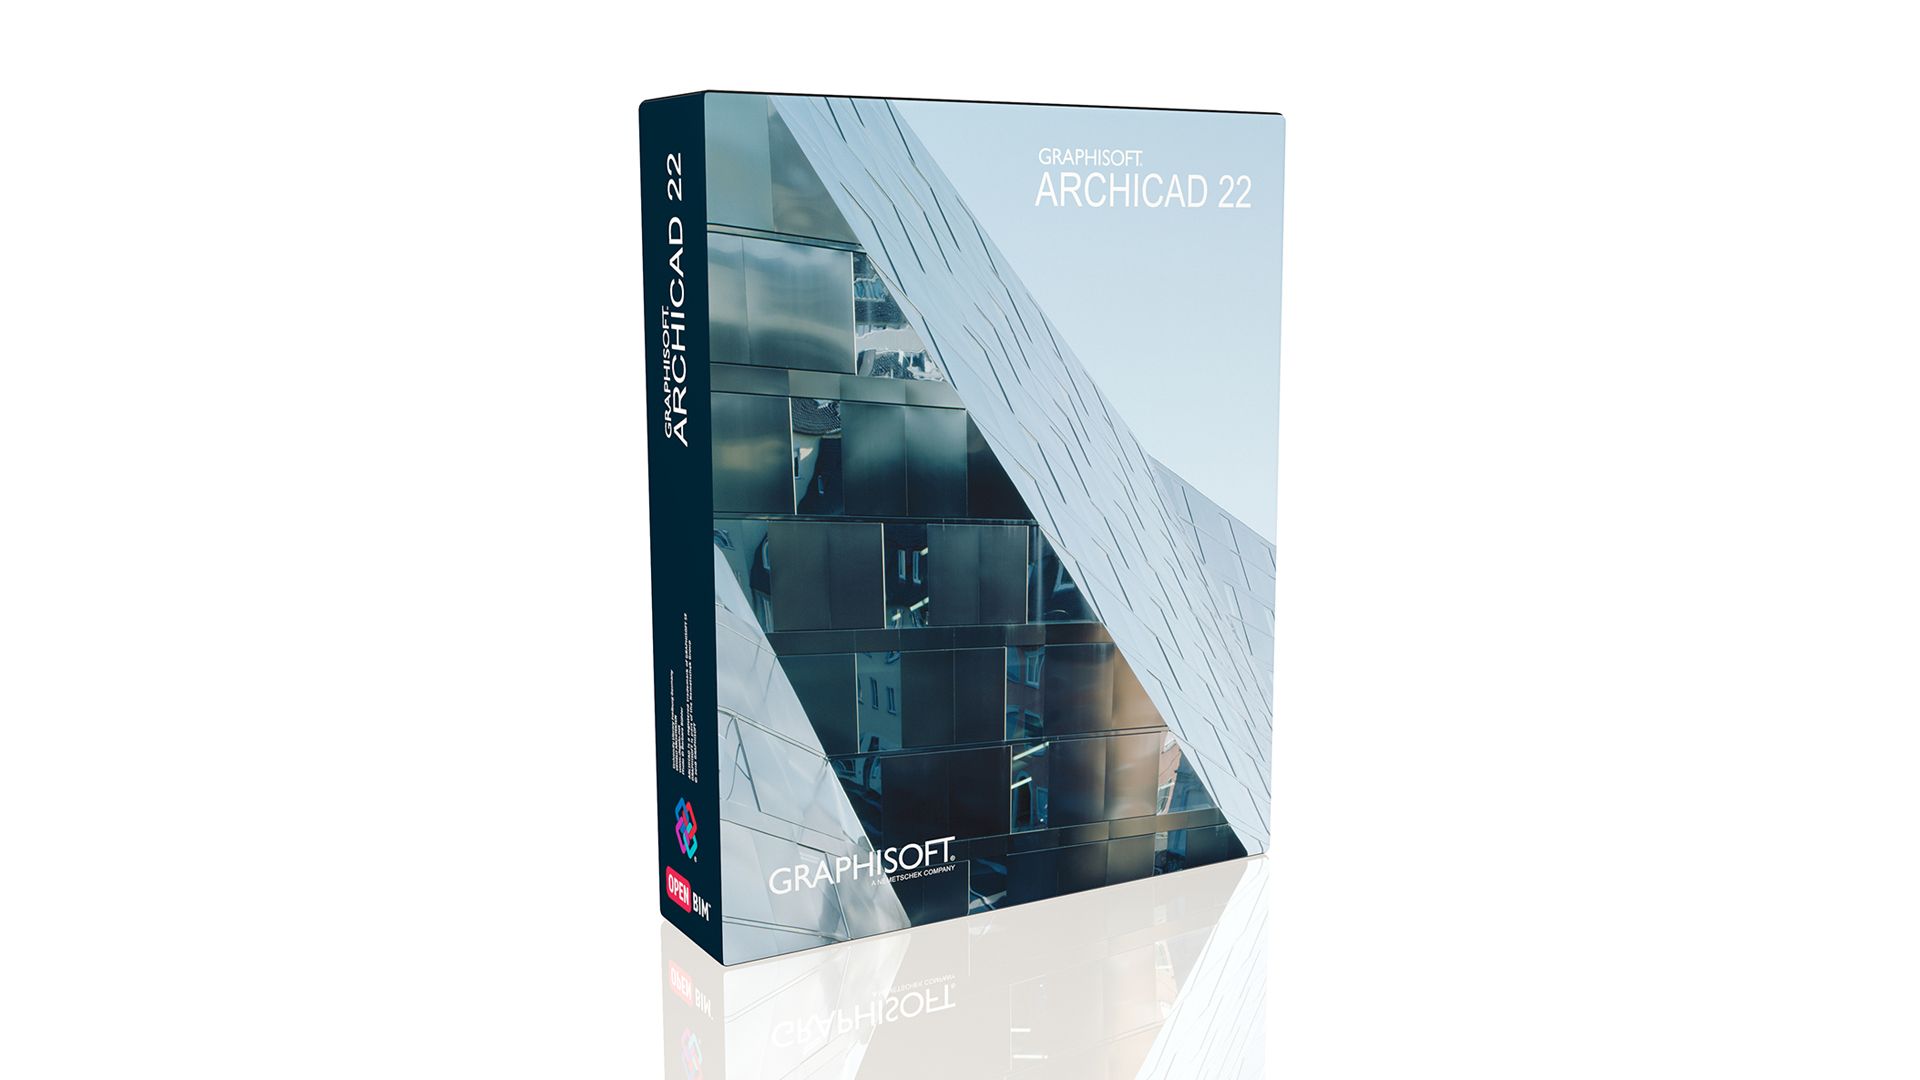 ARCHICAD 22 - najnowsza wersja programu ARCHICAD dostępna na polskim rynku. Fot. WSC/Graphisoft